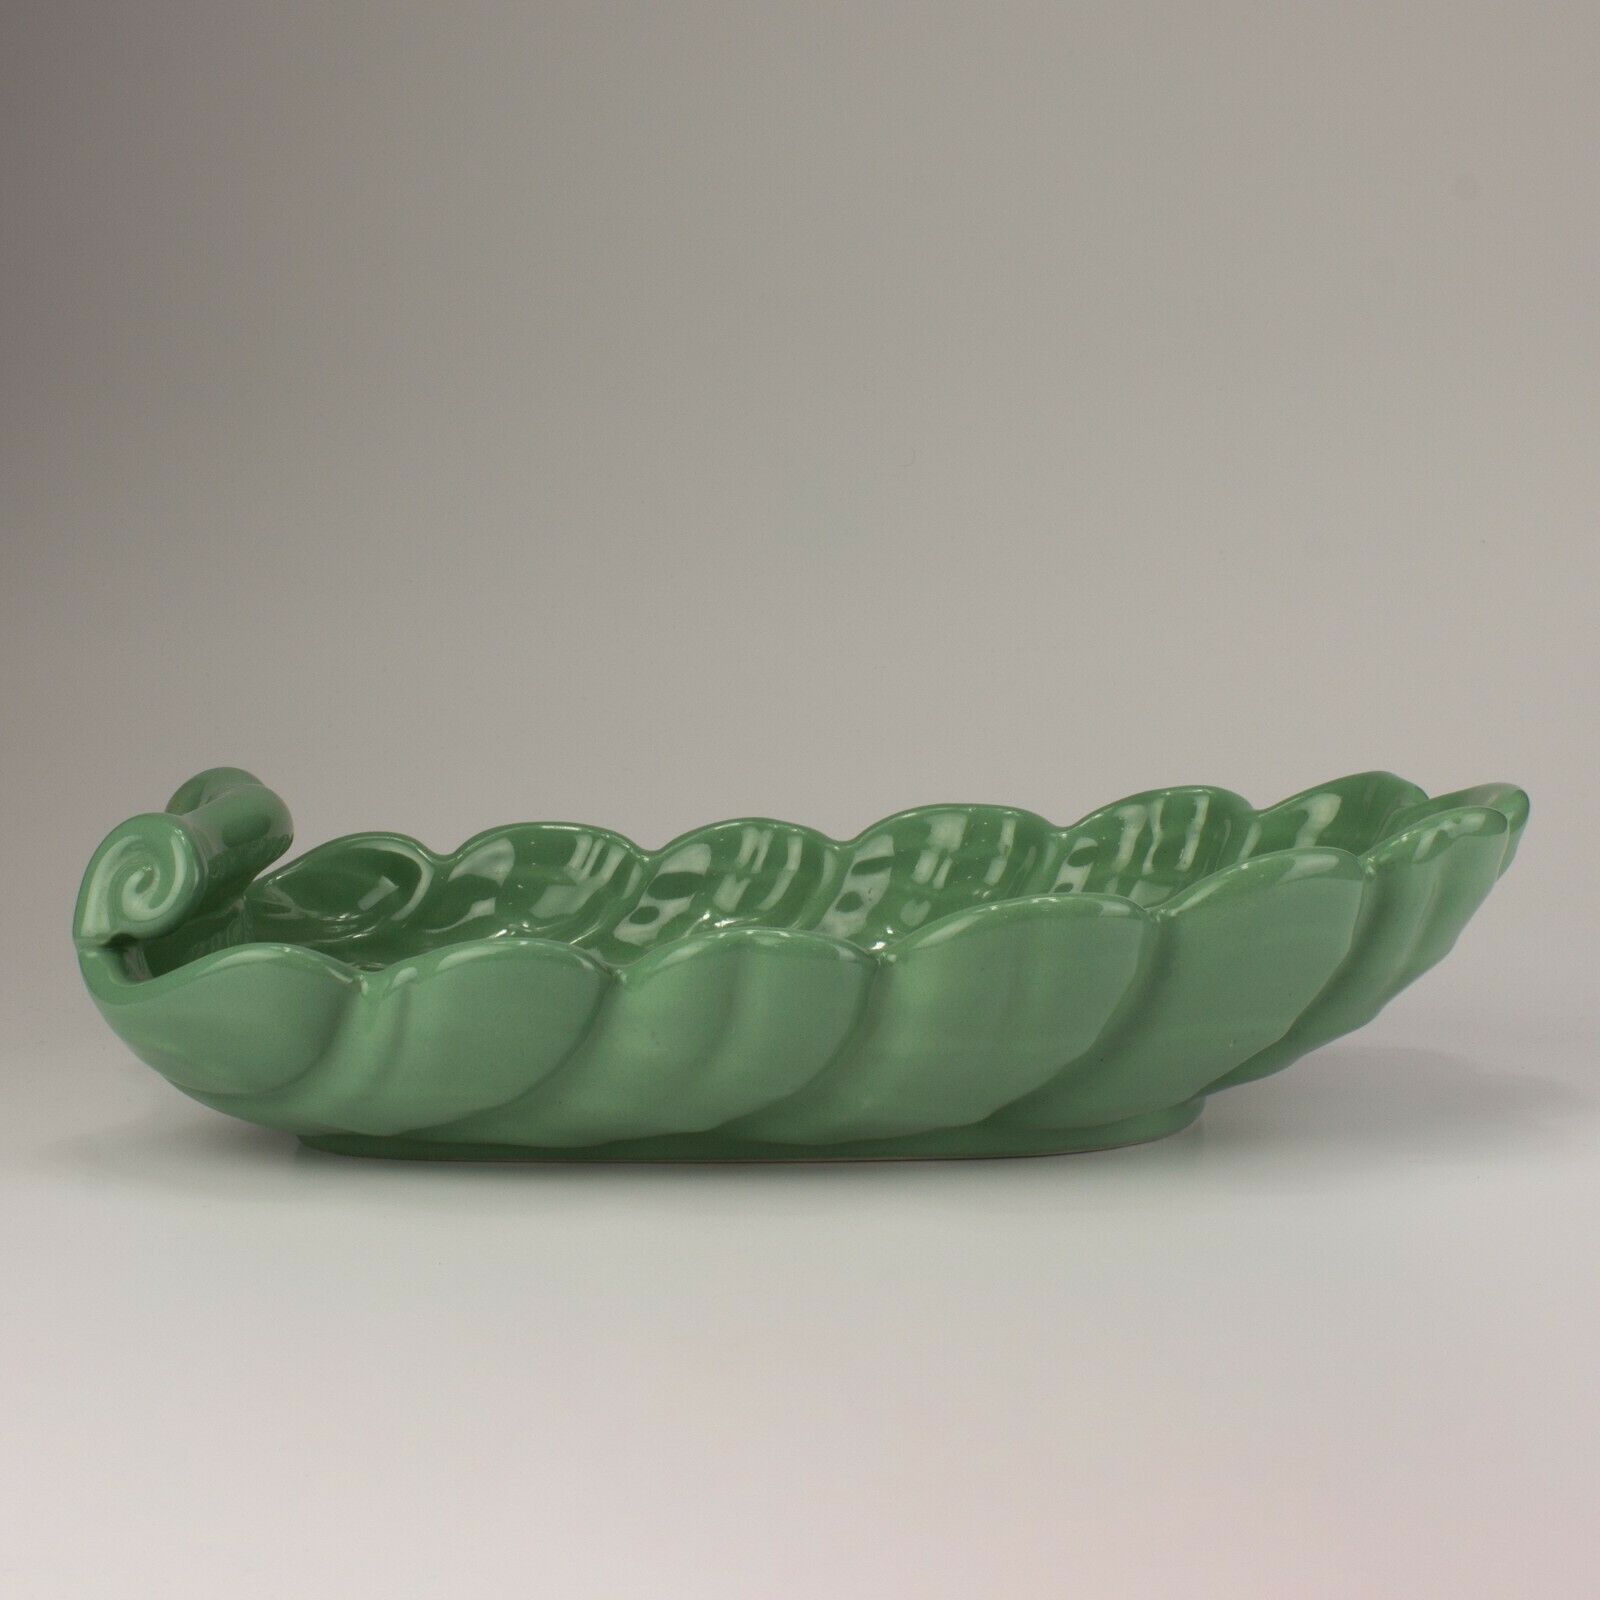 Abingdon Pottery 12" Sea Shell Bowl, Shape 501 , Sea Green